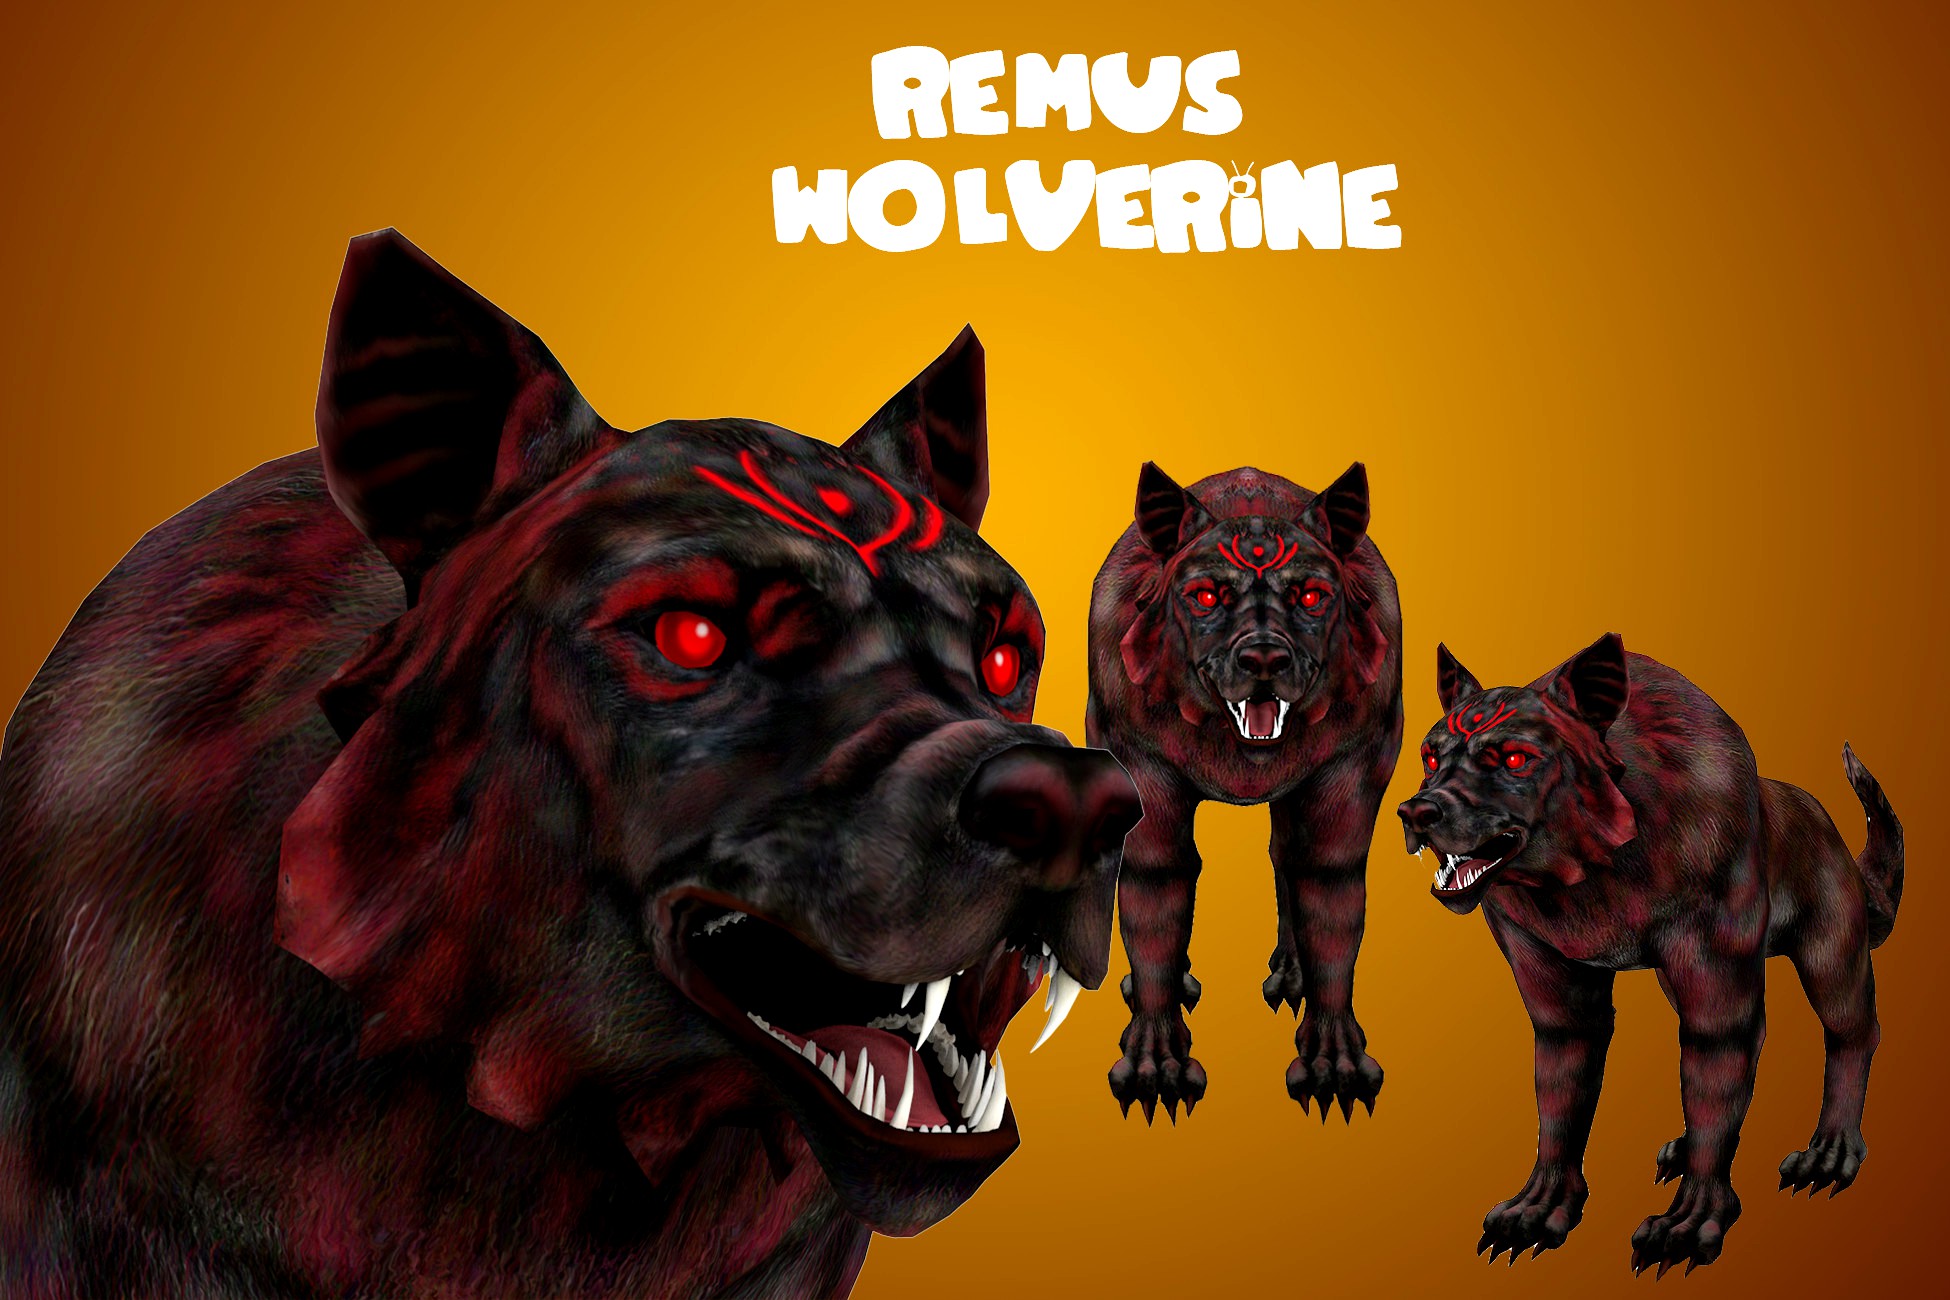 Remus Wolverine